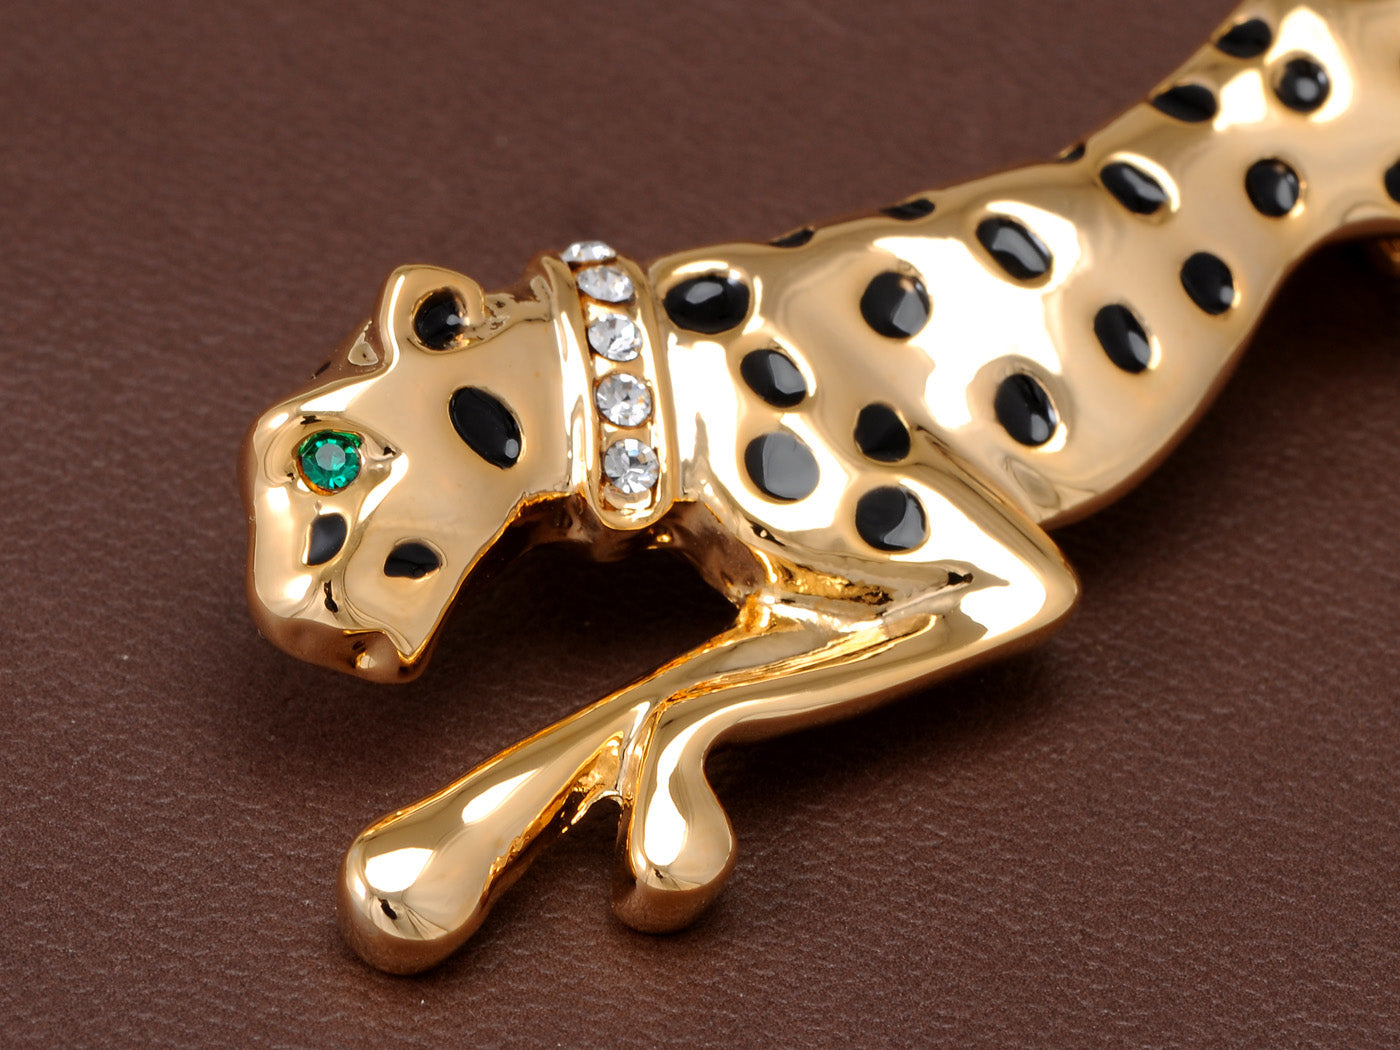 Enamel Leopard Cougar Brooch Pin